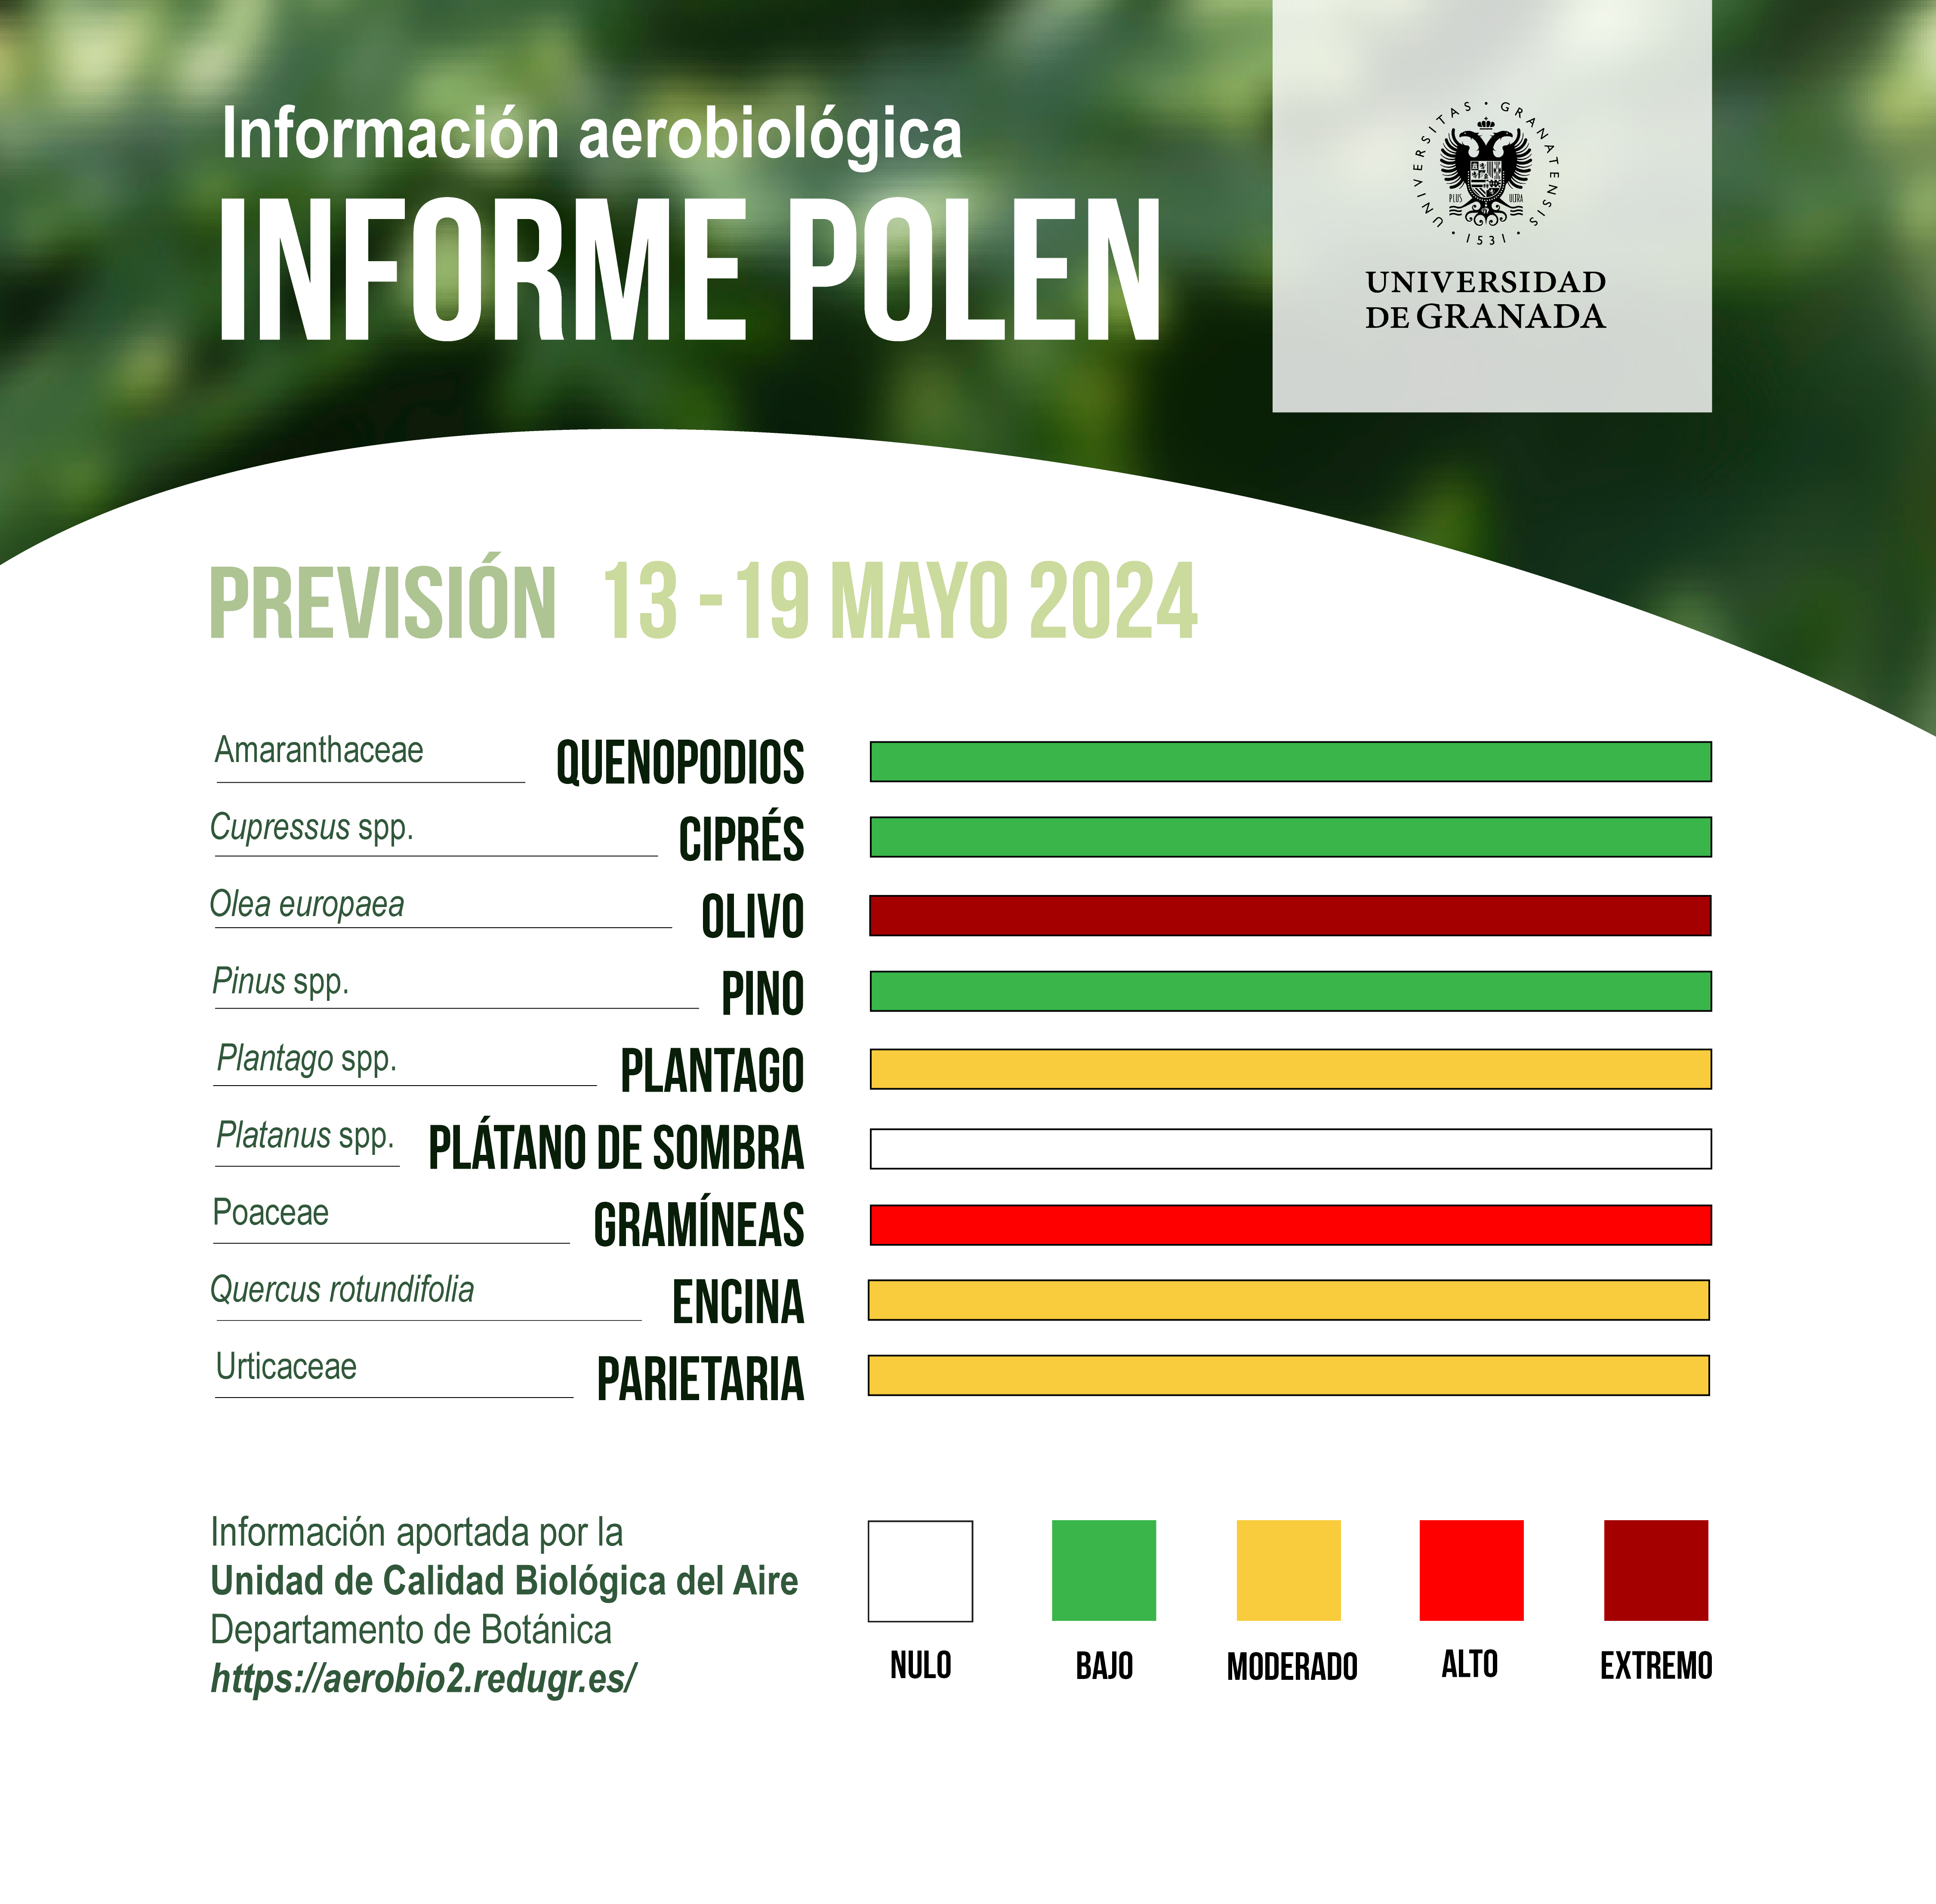 informe polen del 13 al 19 de mayo